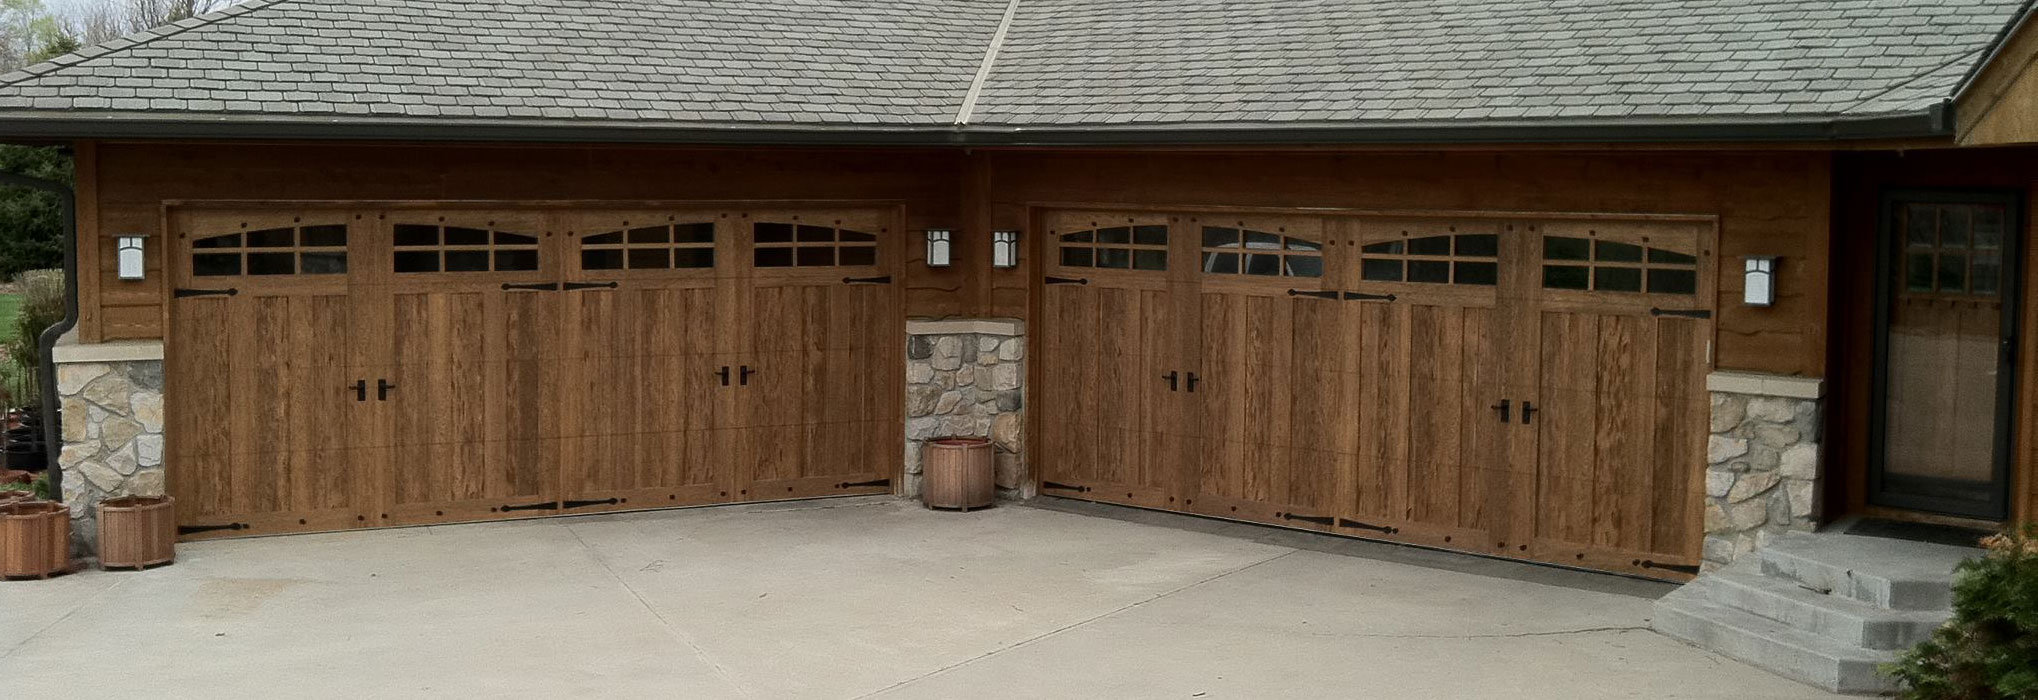 AAA garage door reserve wood collection semi-custom series garage door